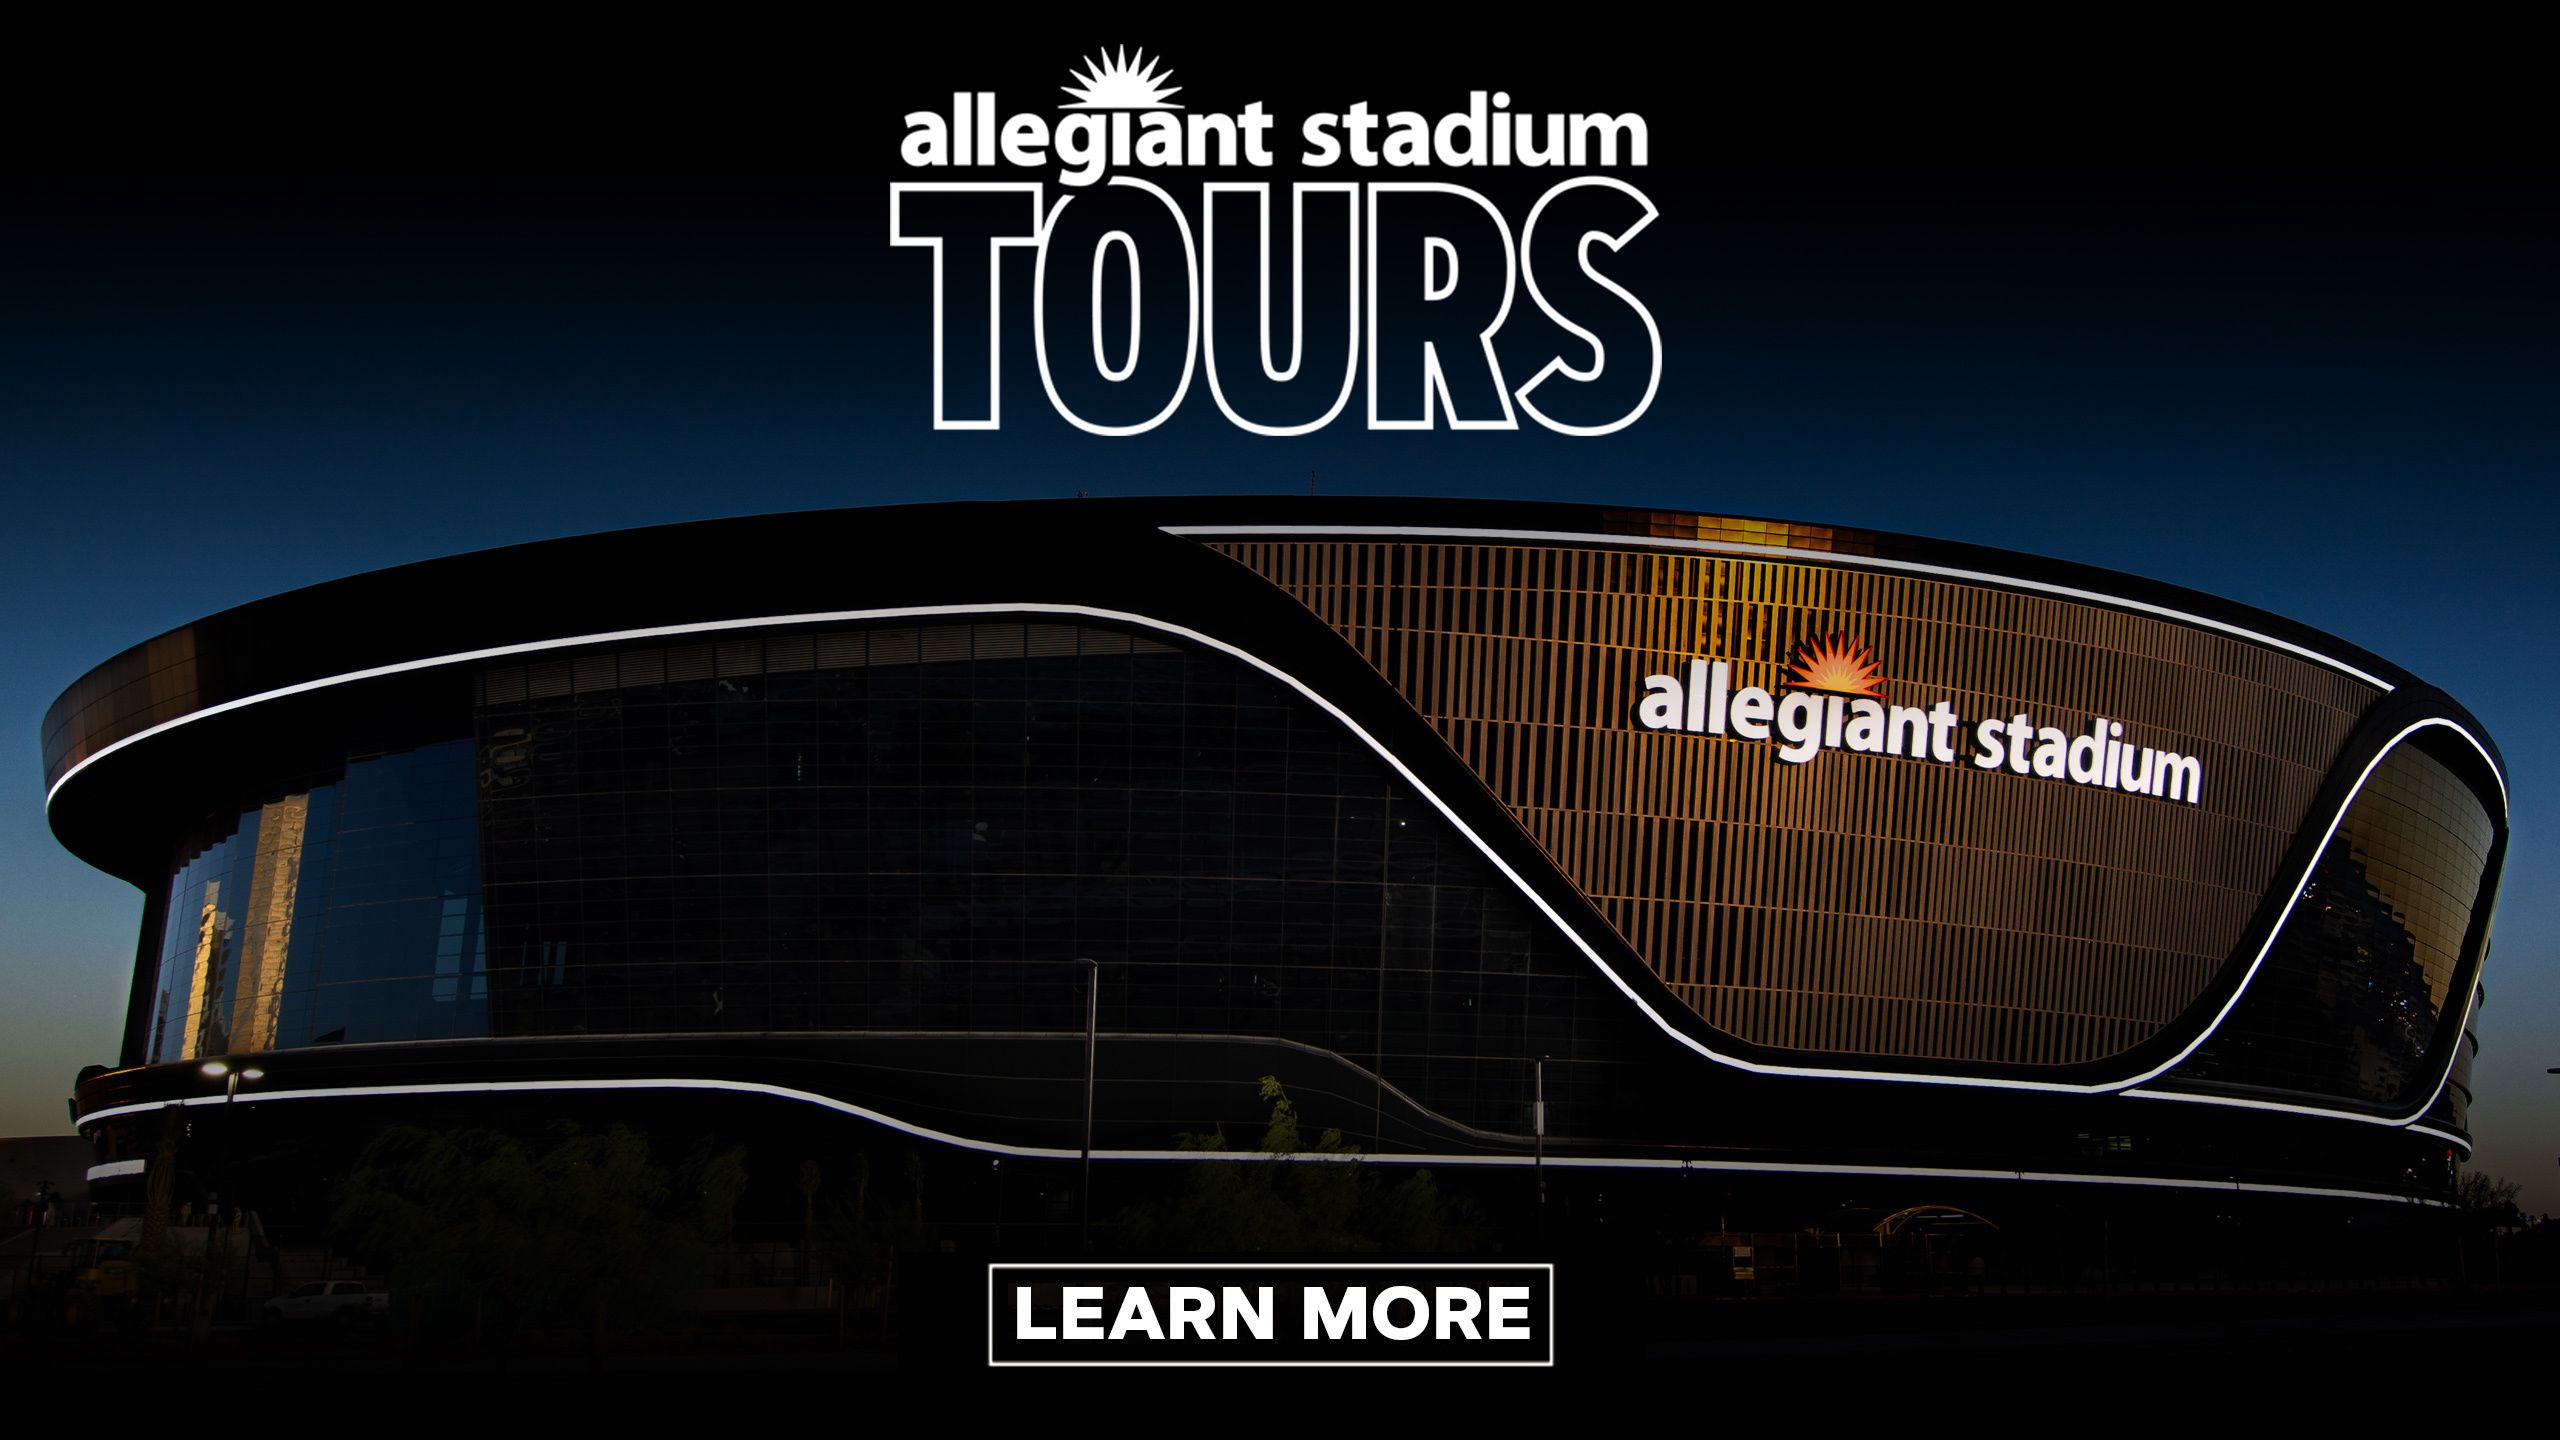 Allegiant Stadium Tour Information, Las Vegas Raiders